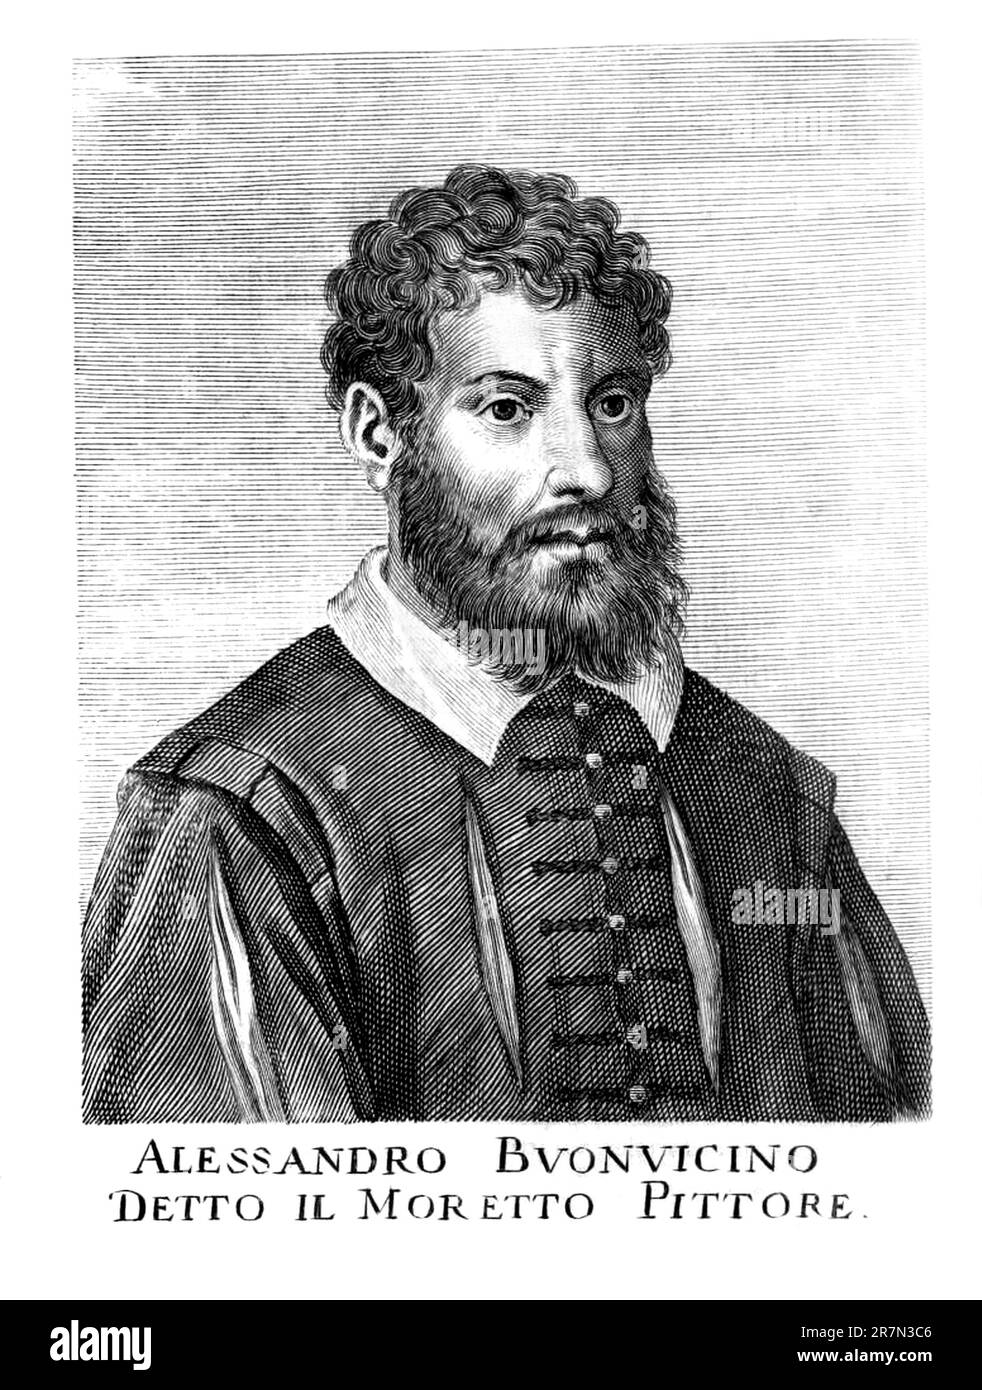 1540 c, Brescia , ITALIEN : The Celebrate italian Maler IL MORETTO alias ALESSANDRO BONVICINO ( 1492 c. - 1554 ). Unbekannte Gravur aus dem Originalporträt des Maler und Schriftstellers CARLO RIDOLFI ( Sartor , 1594 - 1658 ), veröffentlicht in seinem Biographiewerk " Le Maraviglie dell'arte ", 1648 , Venezia . - GESCHICHTE - FOTO STORICHE - BUONVICINO - Bonvicini - PORTRAIT - RITRATTO - Bart - barba - ARTE - BILDENDE KUNST - ARTI VISIVE - PITTORE - Gravur - Incisione - Illustration - Illustratore - MALER - RINASCIMENTO - ITALIENISCHE RENAISSANCE -- ARCHIVIO GBB Stockfoto